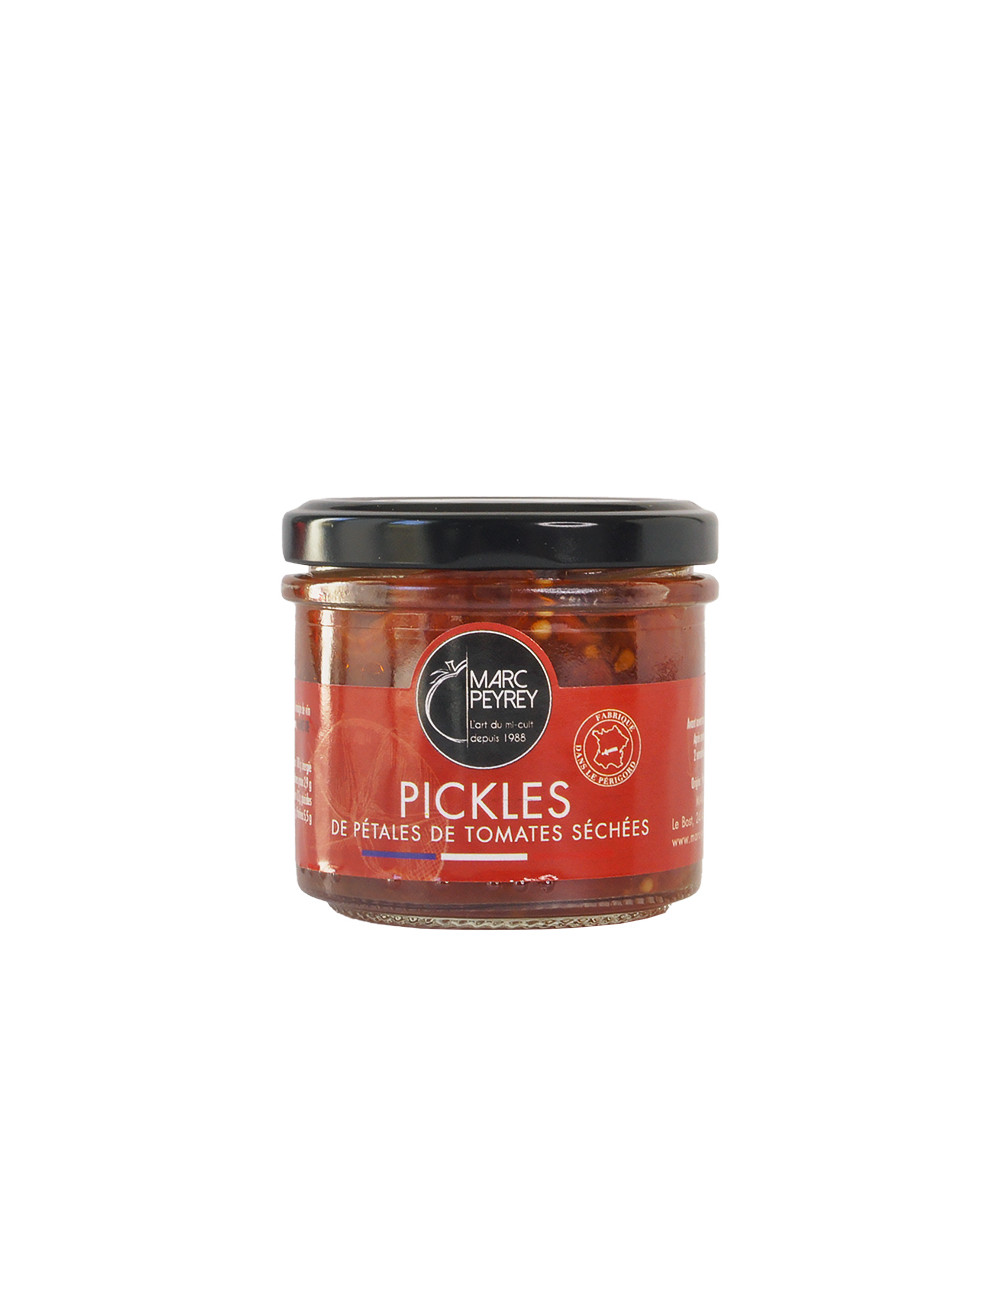 Pickles tomates séchées marc peyrey